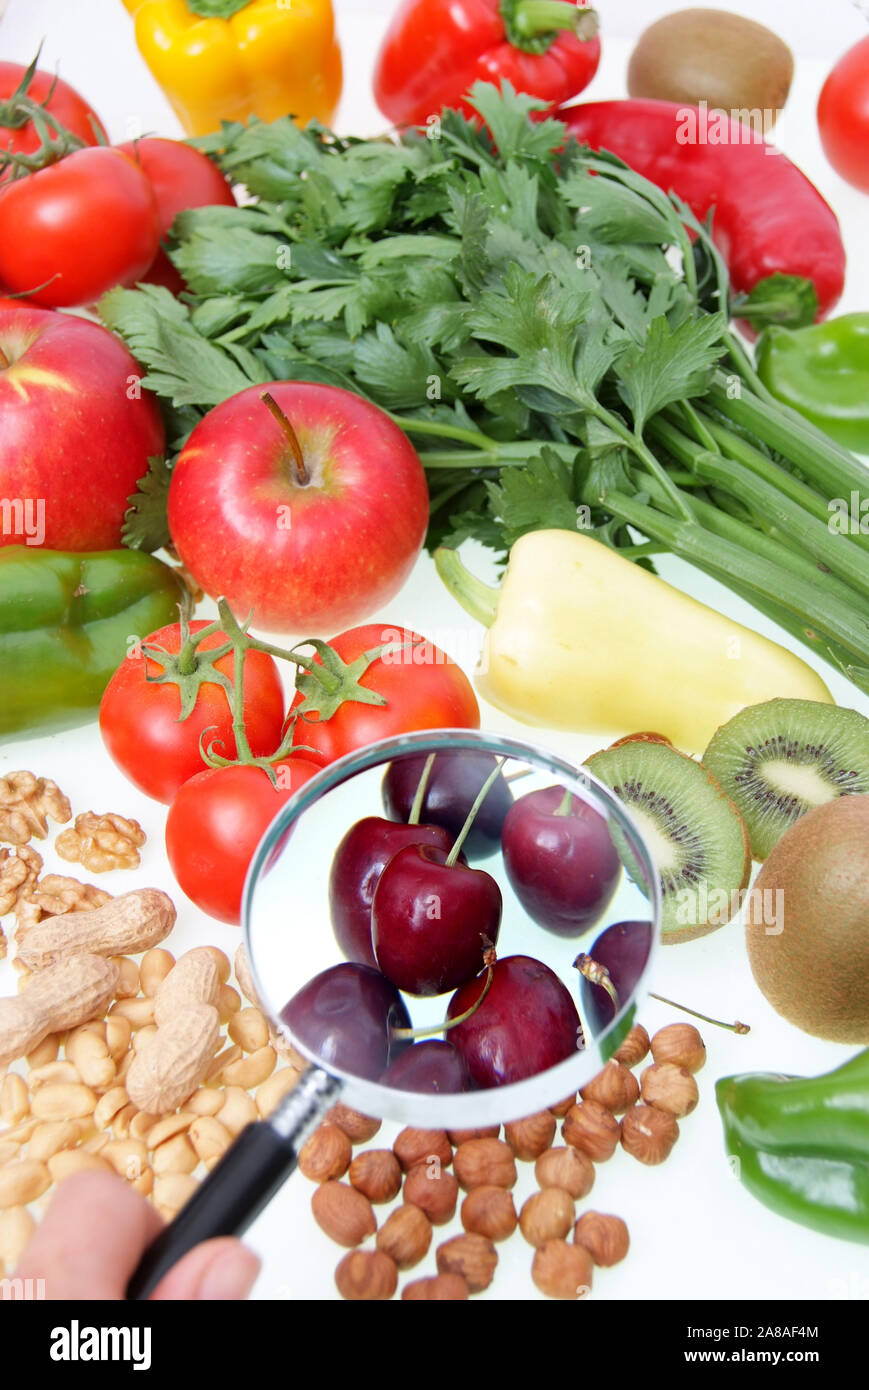 Symbolfoto gesunde Ernährung, Obst, Gemüse, Nüsse, Kirschen, Erdnüsse,  Paproka, Tomaten, Rettich, Walnüsse, Kiwi, Apfel Stock Photo - Alamy